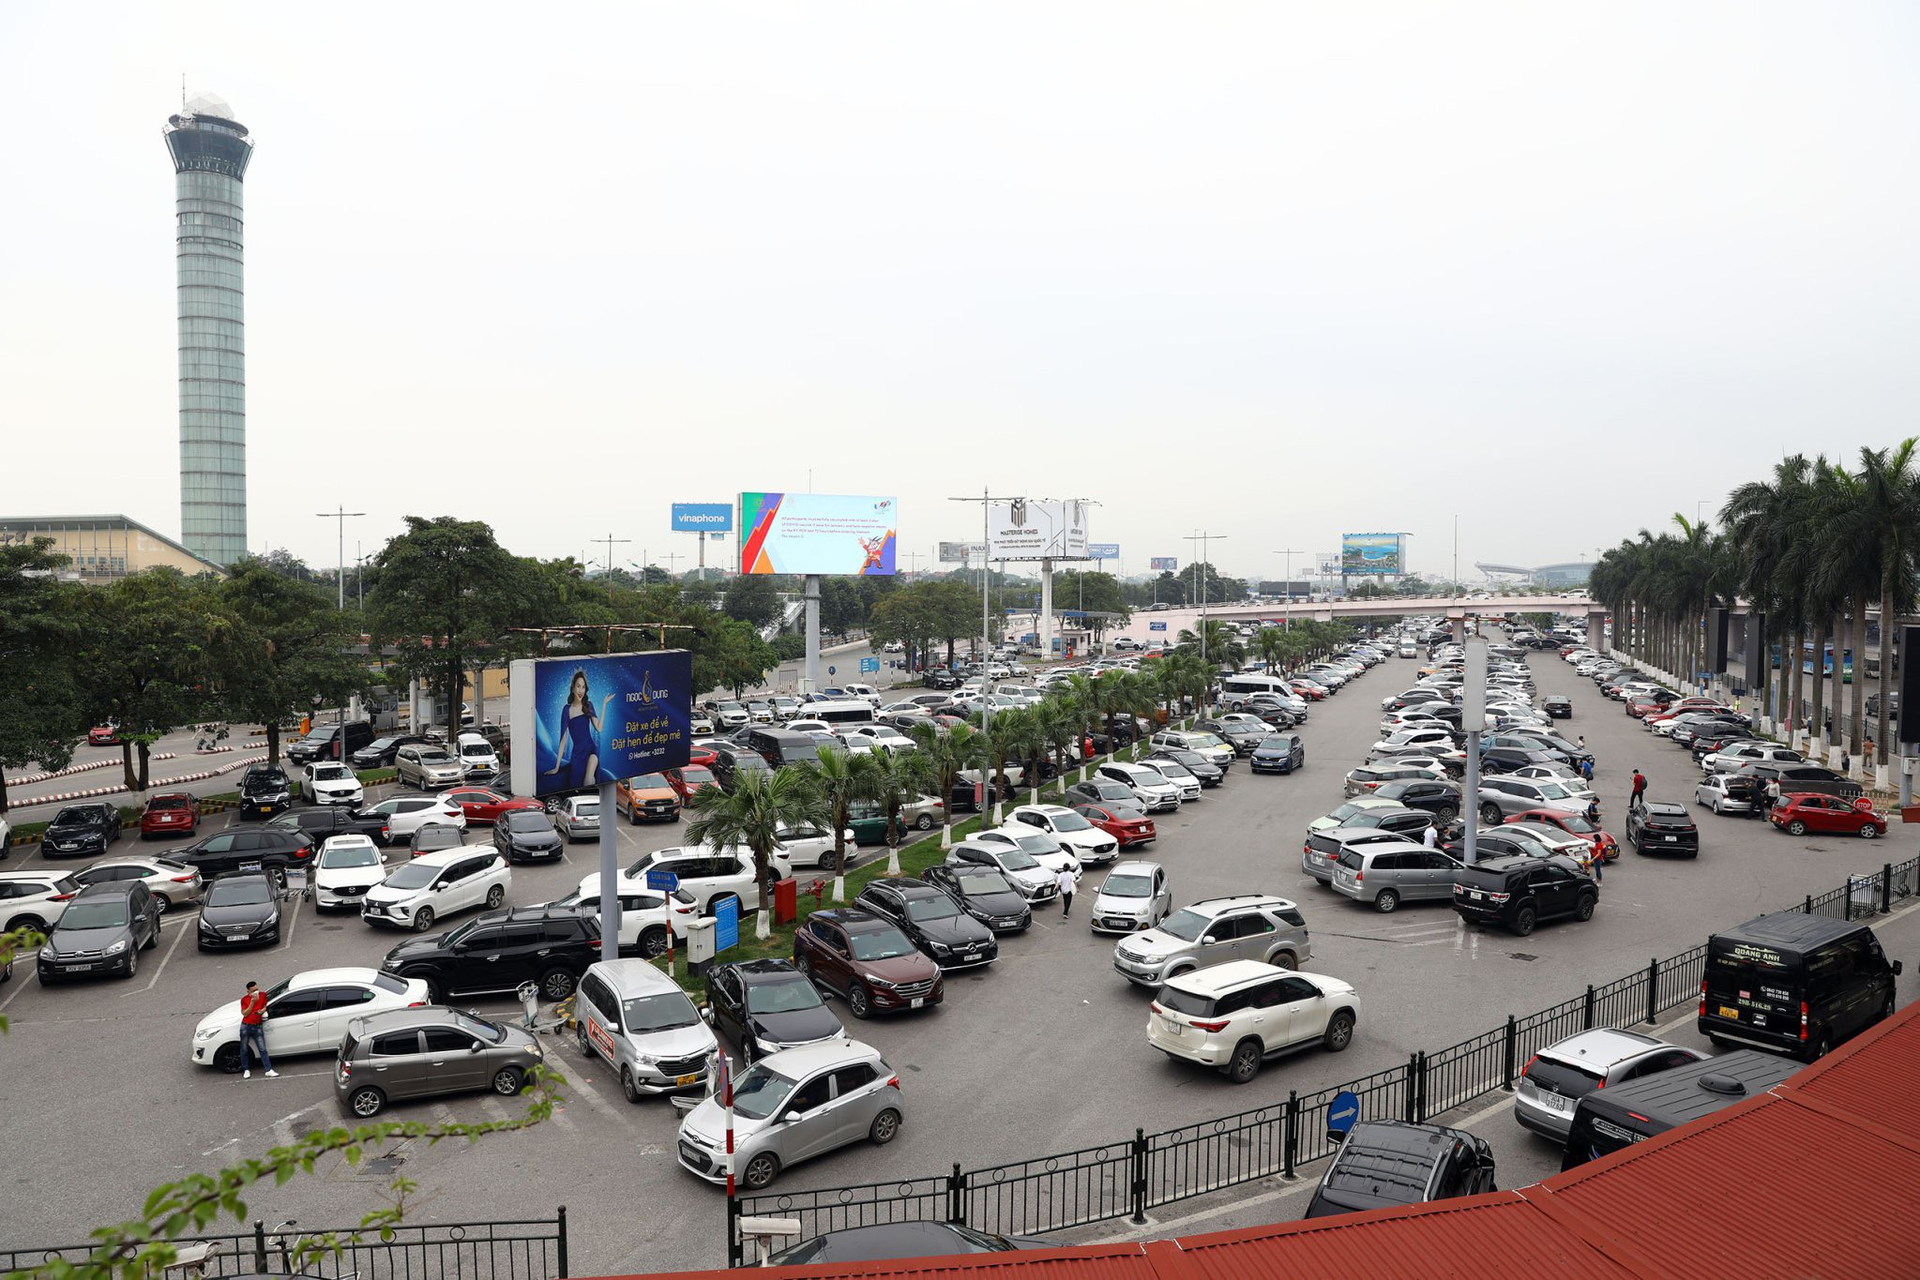 Sân đỗ ô tô phía trước Nhà ga hành khách T1 Nội Bài đông xe nhưng vẫn đảm bảo thông thoáng